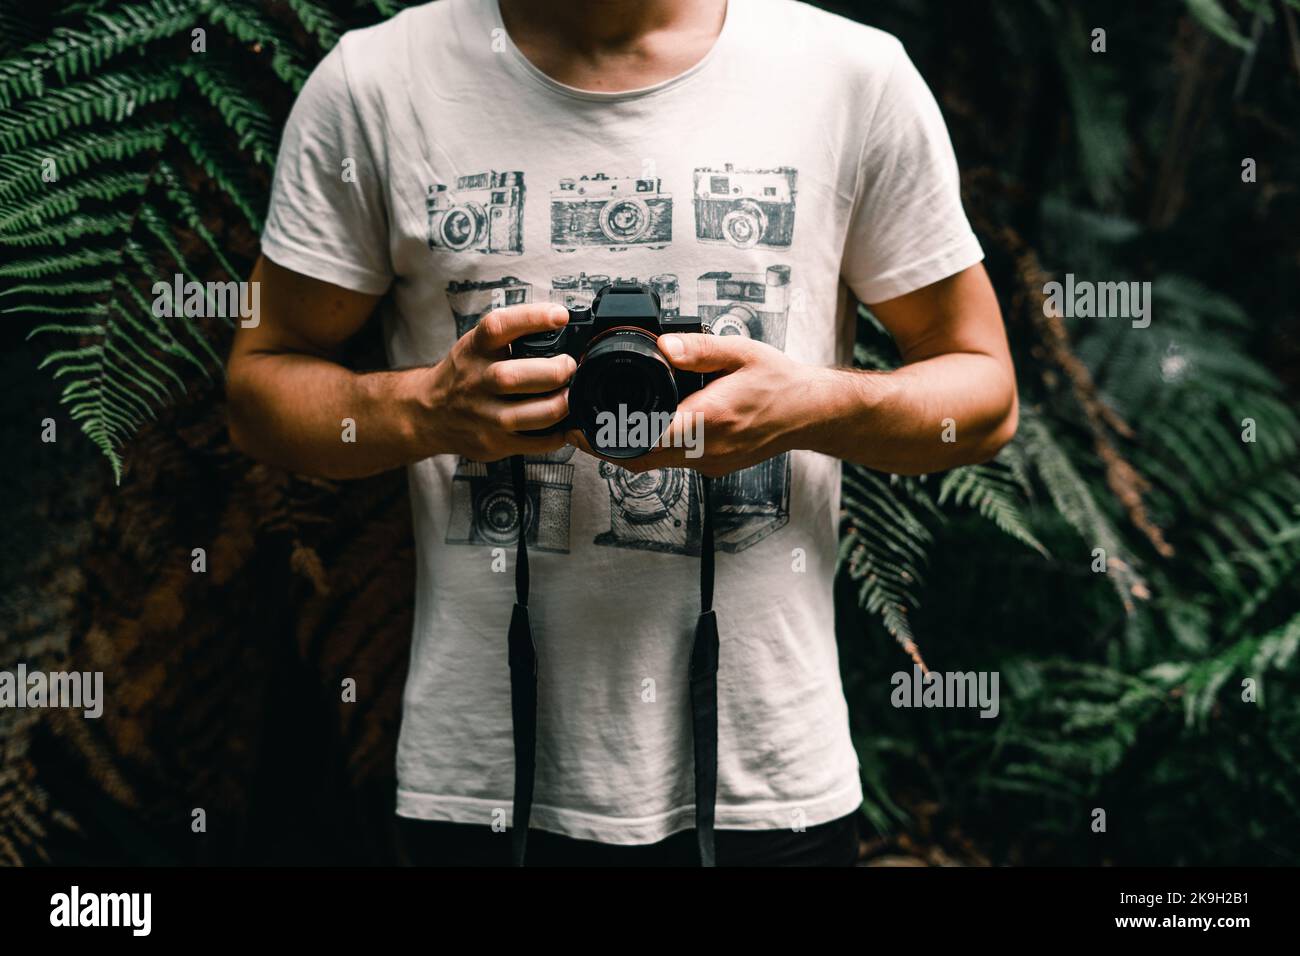 ragazzo caucasico in una t-shirt bianca e cartoon di vecchie macchine fotografiche che mostra una fotocamera fotografica pronta a scattare una foto nella foresta su donut island, nuovo Foto Stock